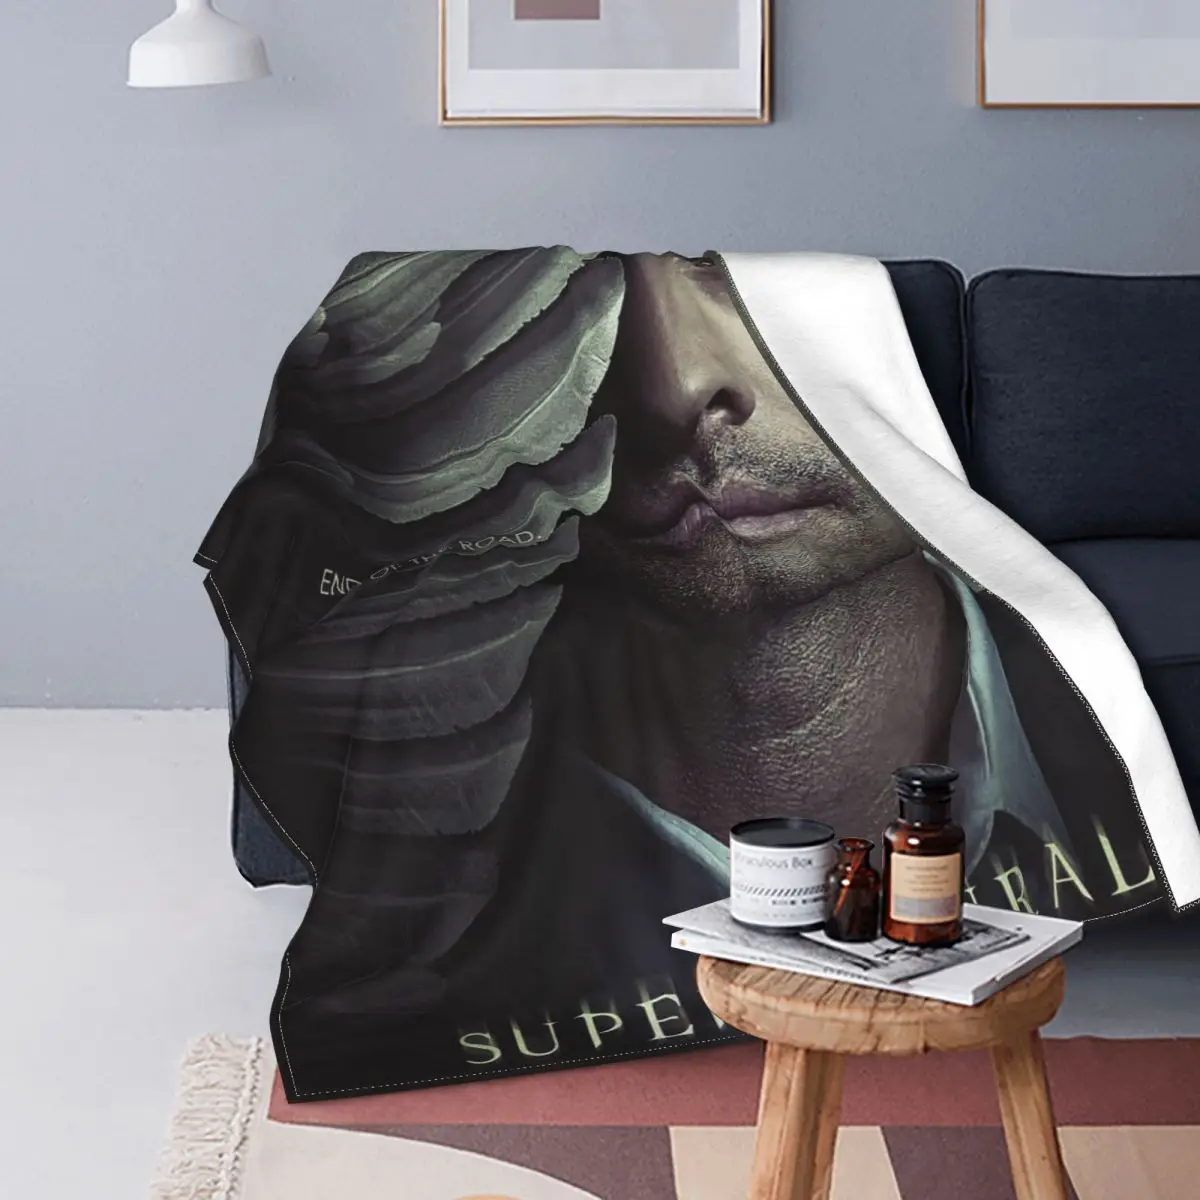 

Супернатуральное шерстяное одеяло из фильма «Конец дороги», кастинское одеяло, покрывало для кровати, дивана, 125*100 см, стеганое одеяло